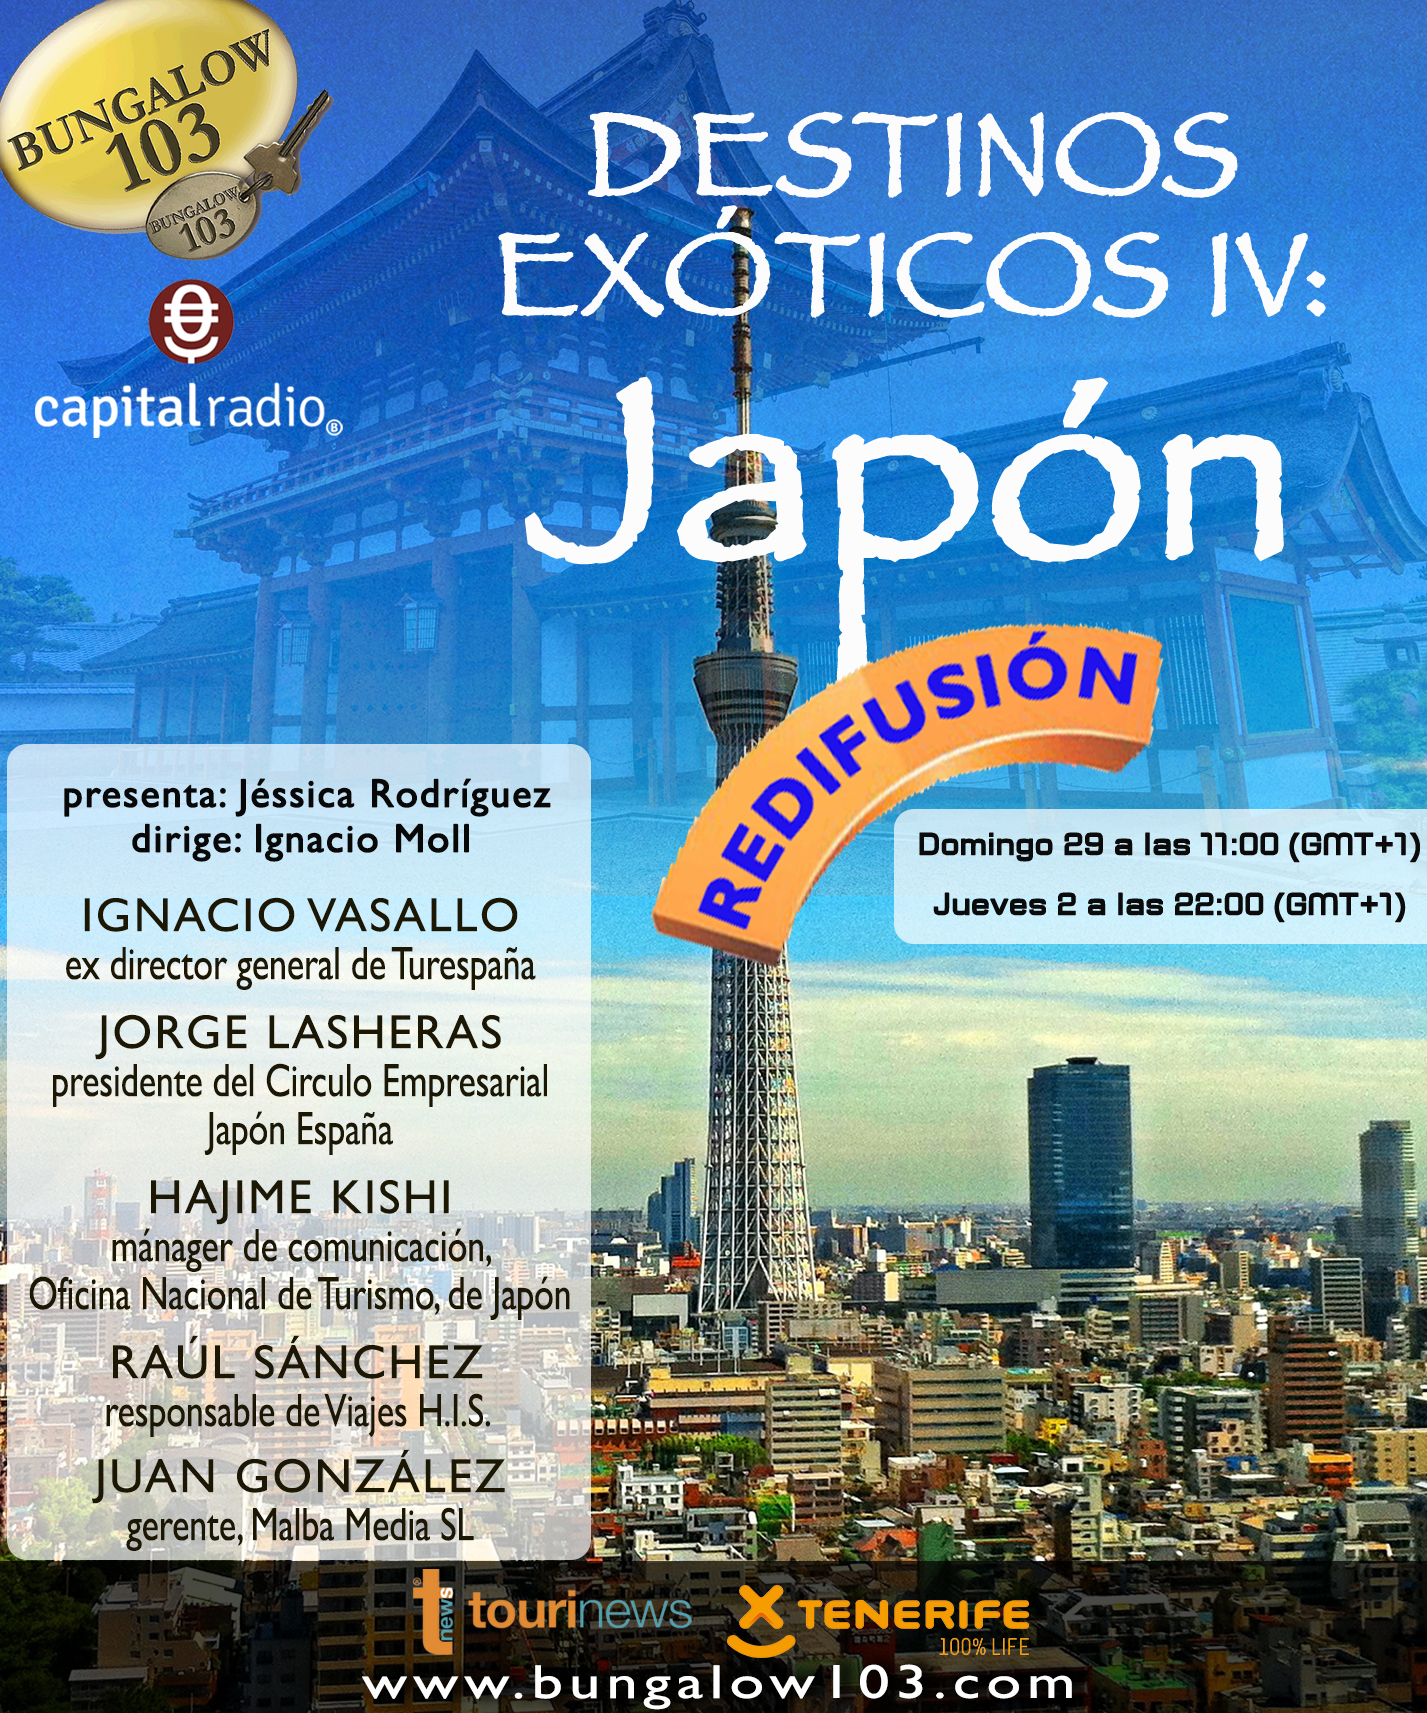 DESTINOS EXÓTICOS IV: JAPÓN